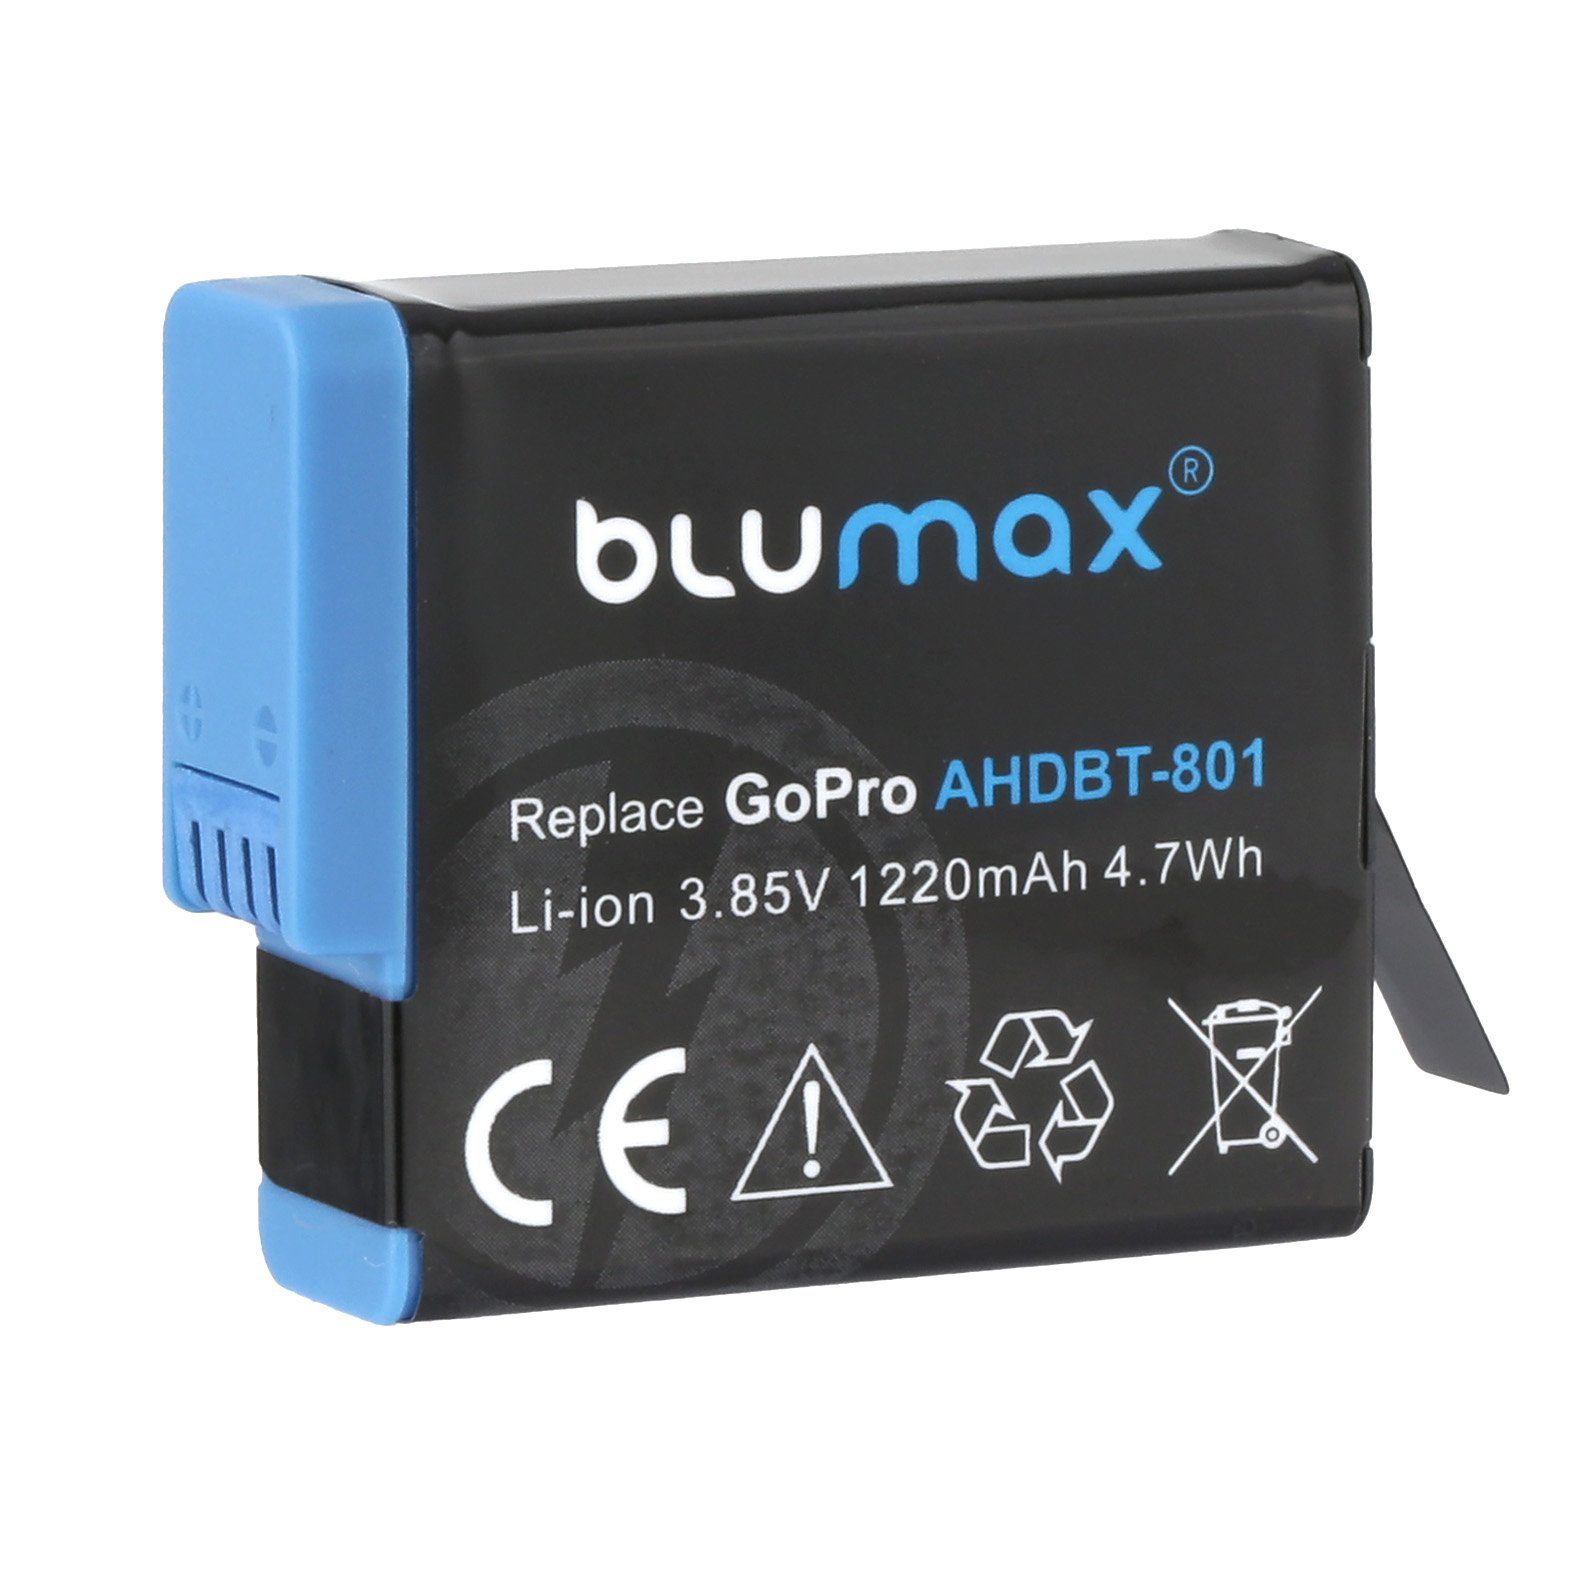 Blumax 2x GoPro Hero AHDBT-801, Hero 5/6/7/8 1220mAh Kamera-Akku